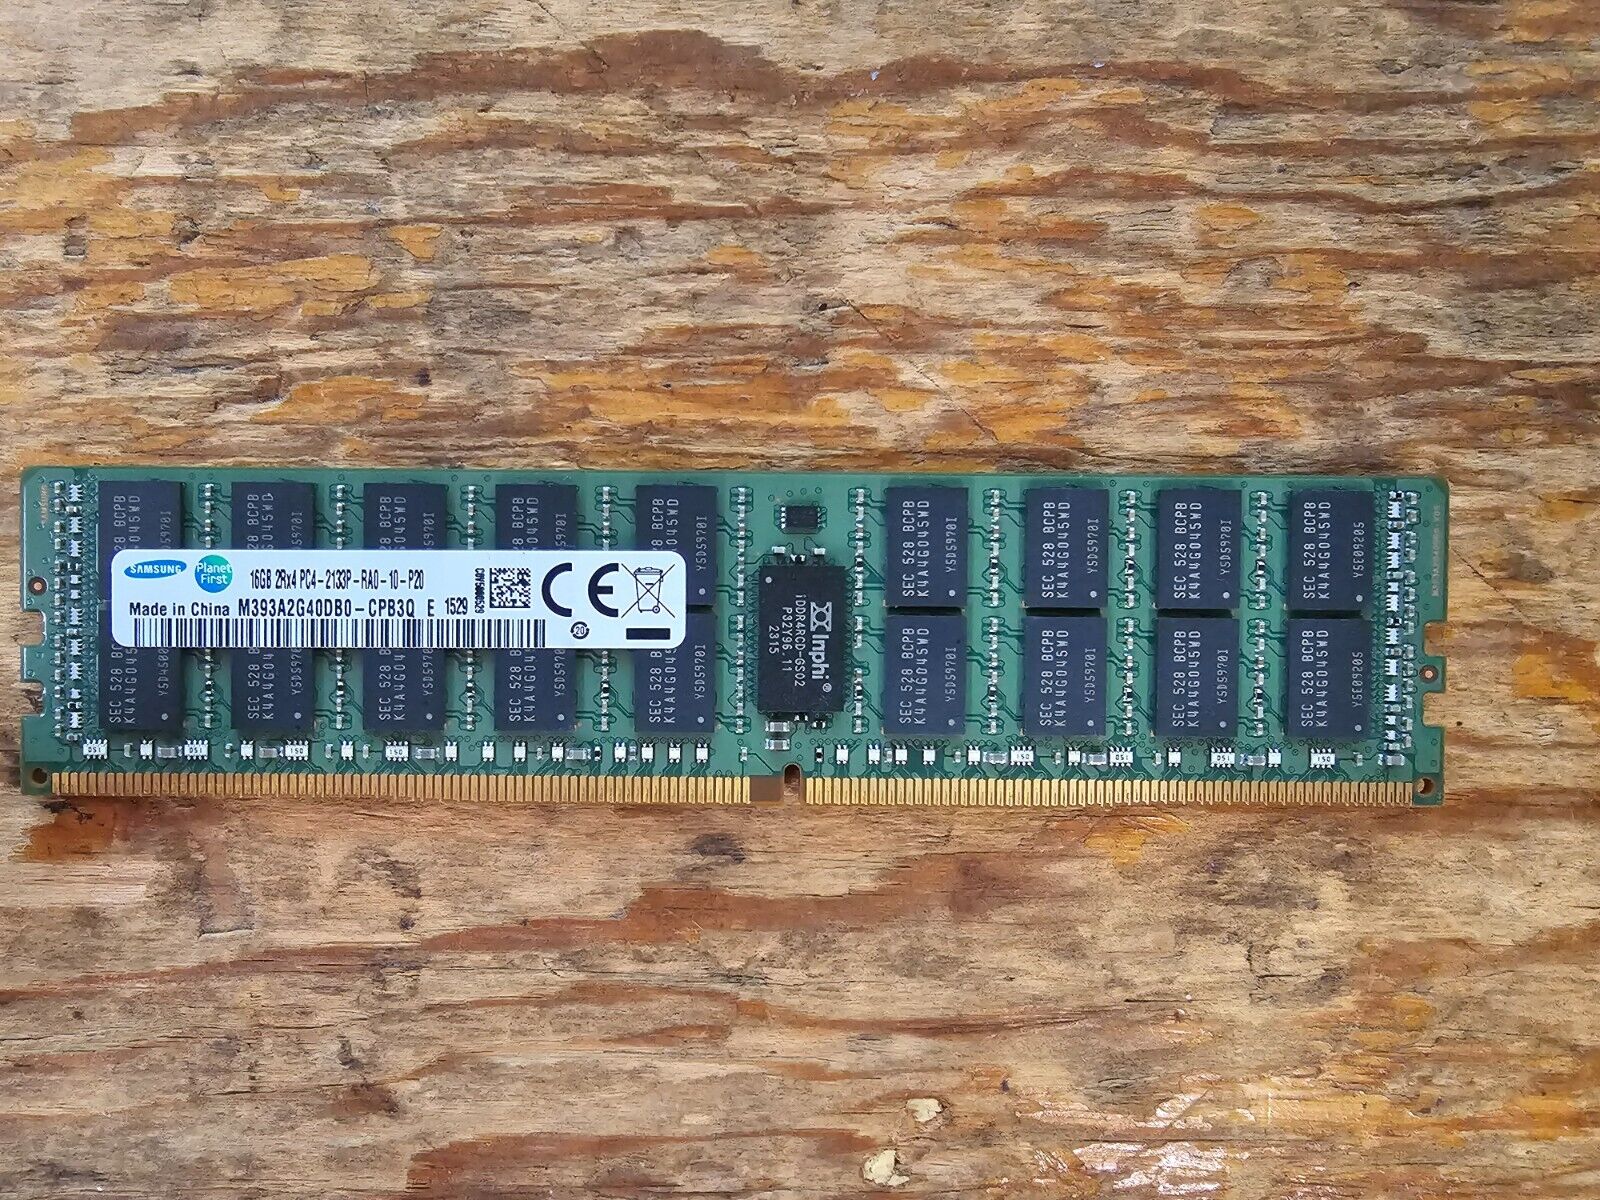 Samsung 16BG 2Rx4 PC4 (DDR4) 2133P-RA0-10-P20 M393A2G40DB0-CPB3Q E 1529